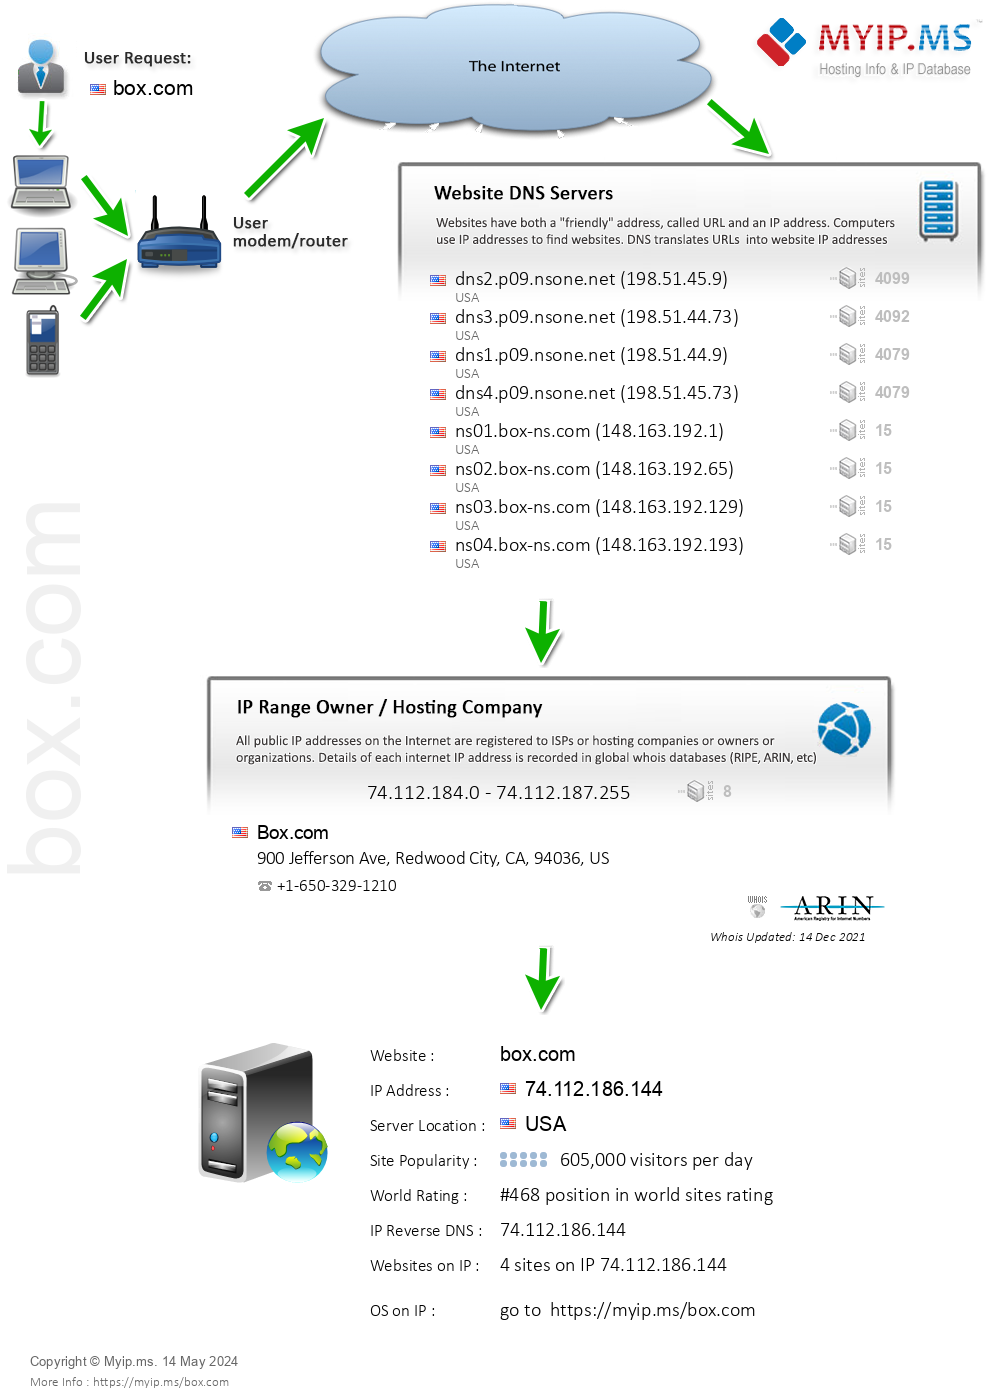 Box.com - Website Hosting Visual IP Diagram